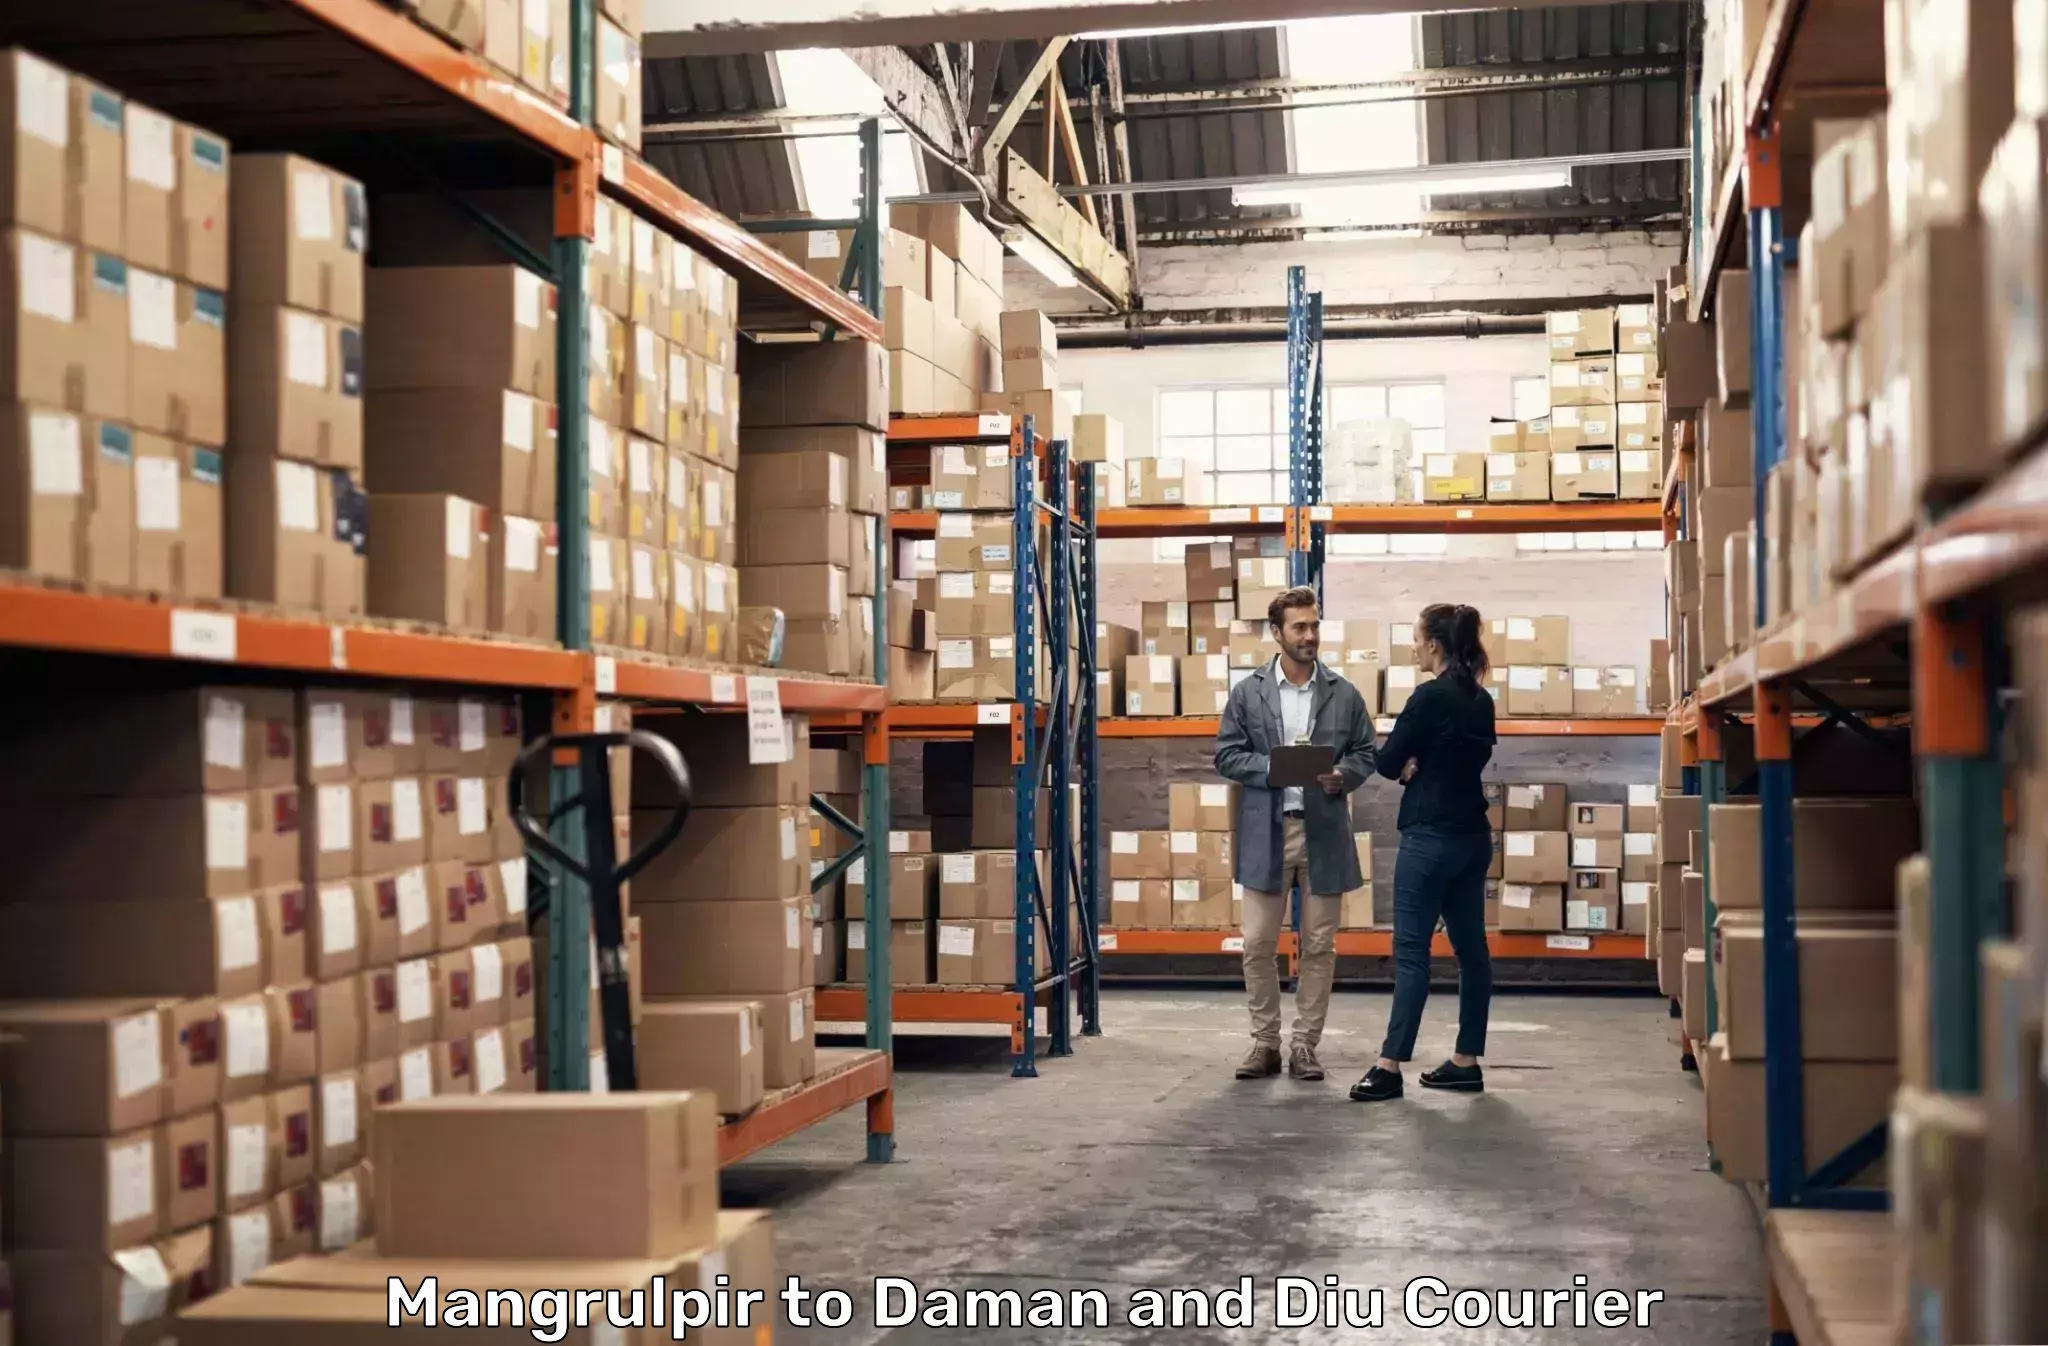 Business shipping needs Mangrulpir to Daman and Diu